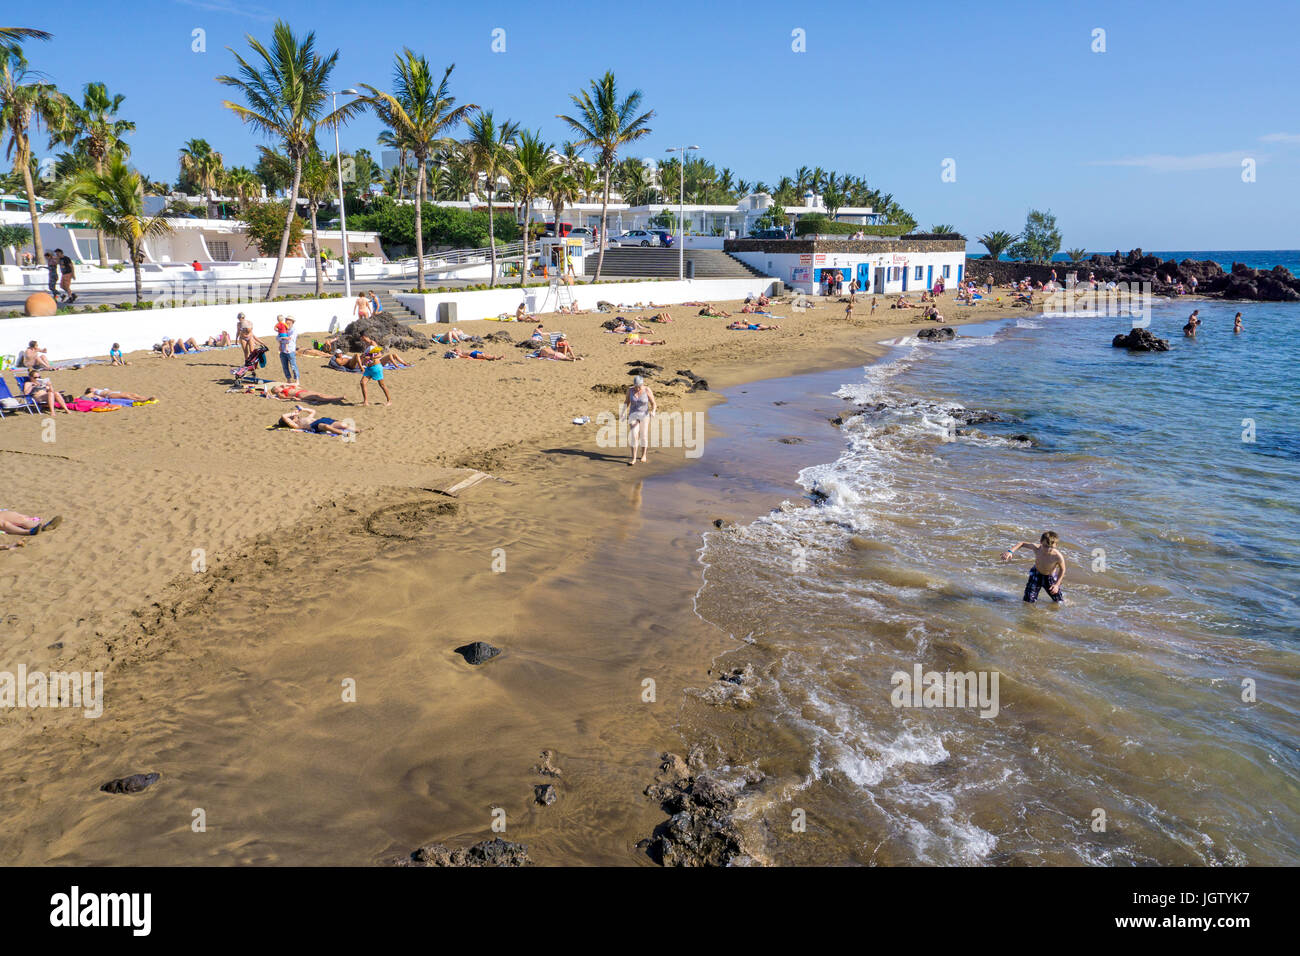 La playa de Barilla, kleiner badestrand en Puerto del Carmen, Lanzarote, KANARISCHE INSELN, Europa | Playa de Barilla, pequeña playa en Puerto del coche Foto de stock